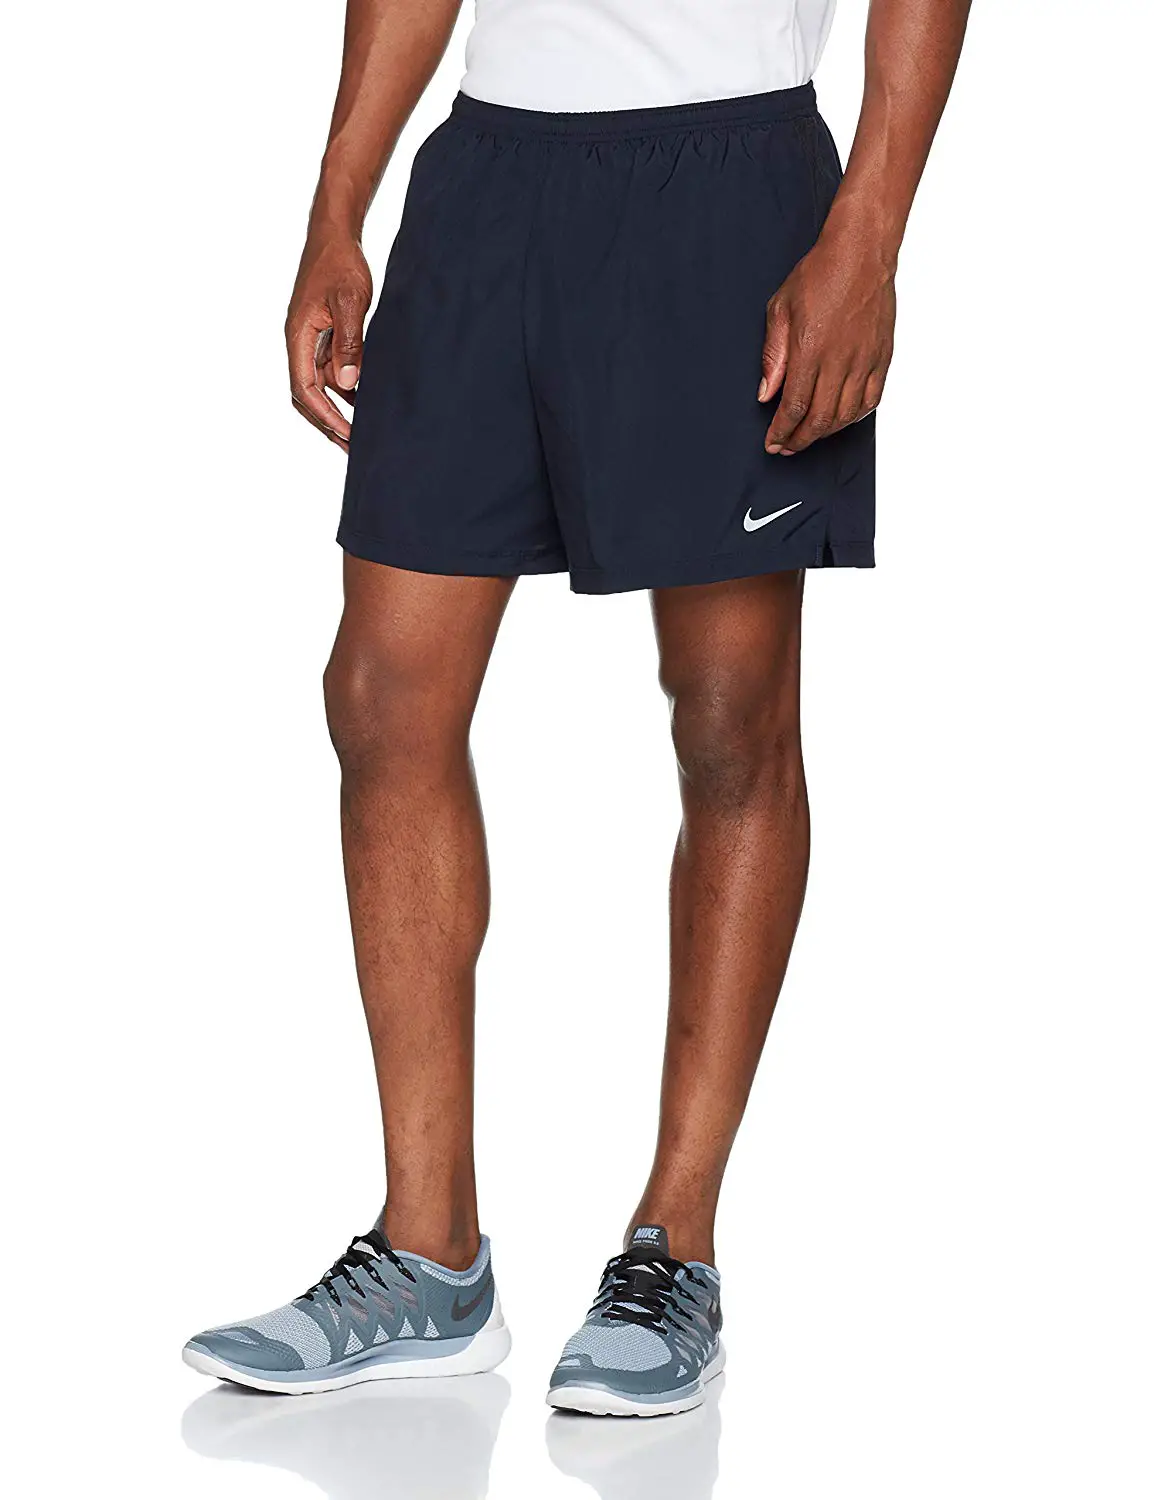 Nike Men's 7 Challenger Short black